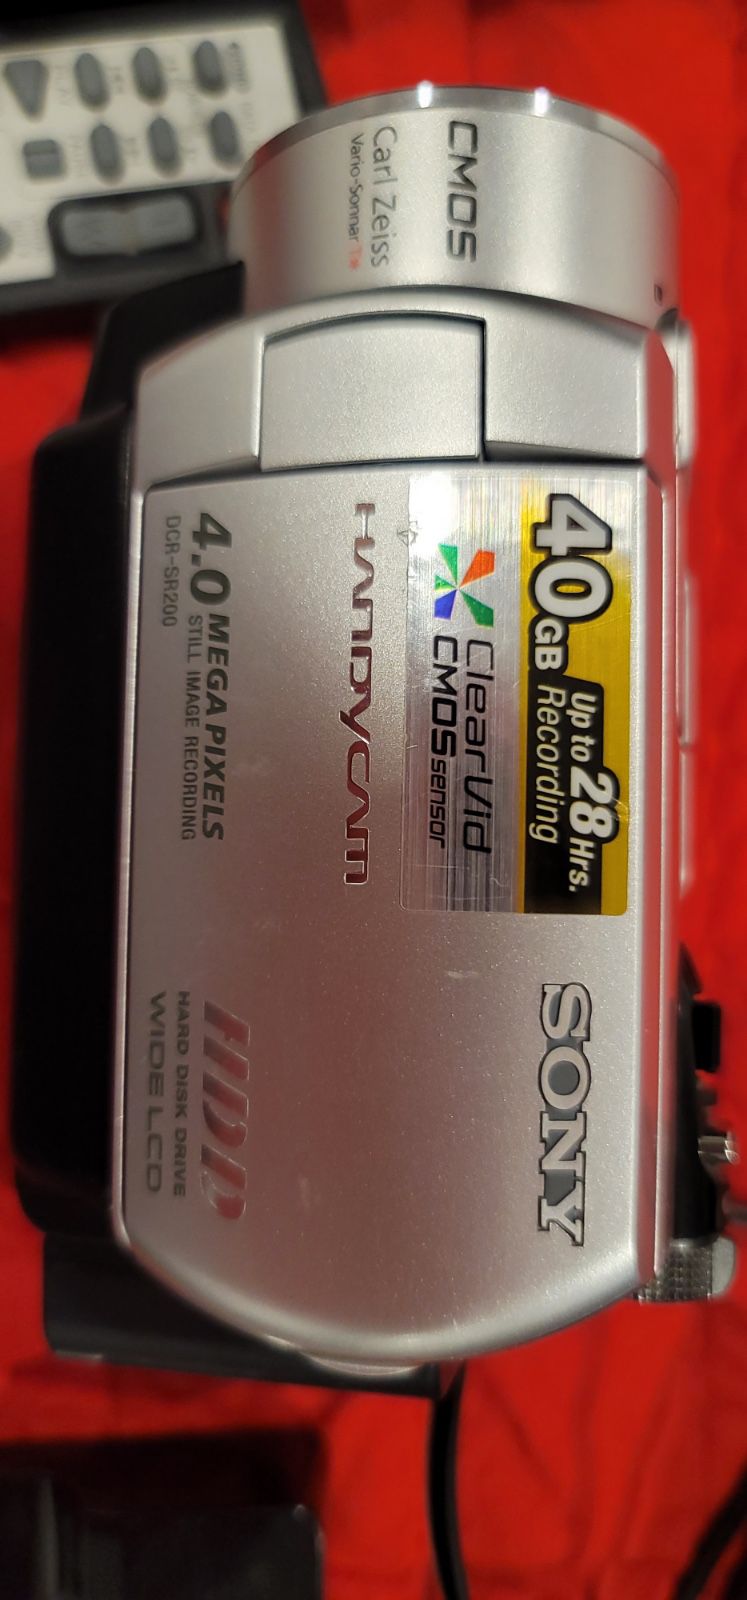 Sony HandycamVideo Camera